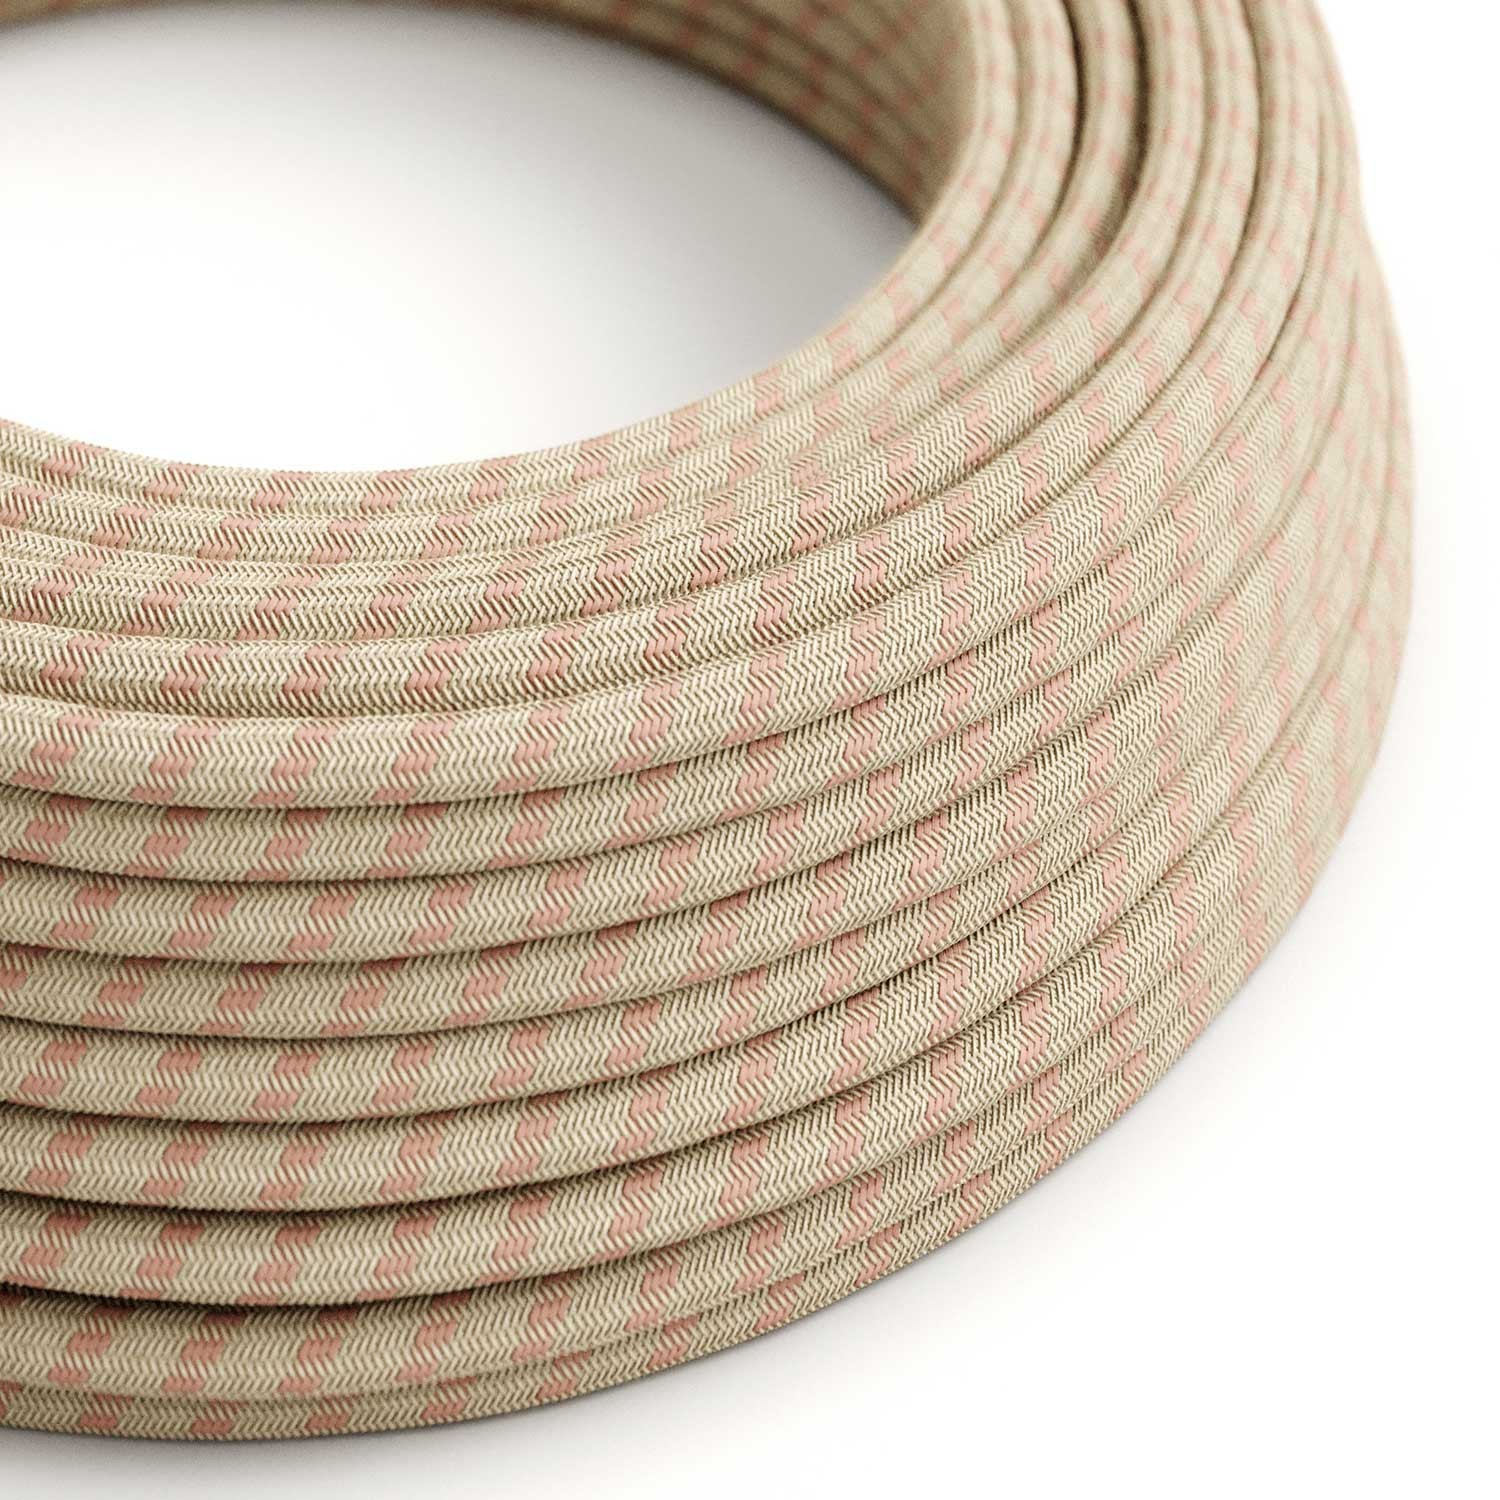 Câble textile Rose antique et rayures beiges - L'Original Creative-Cables - RD51 rond 2x0,75mm / 3x0,75mm